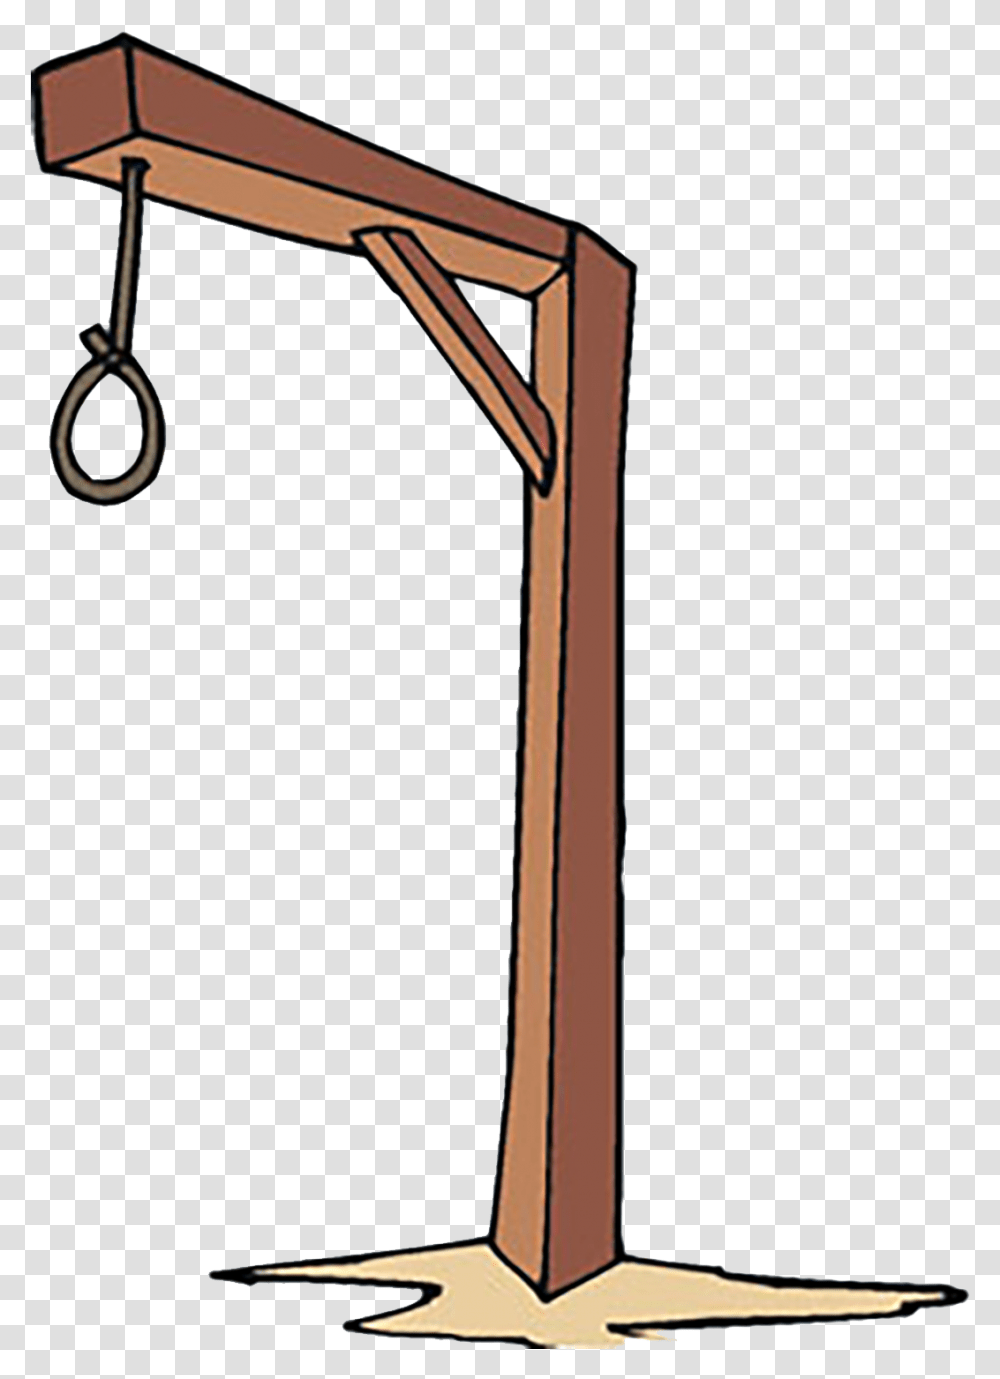 Disney Villains Hangman Cartoon Noose, Lamp, Stand, Shop Transparent Png